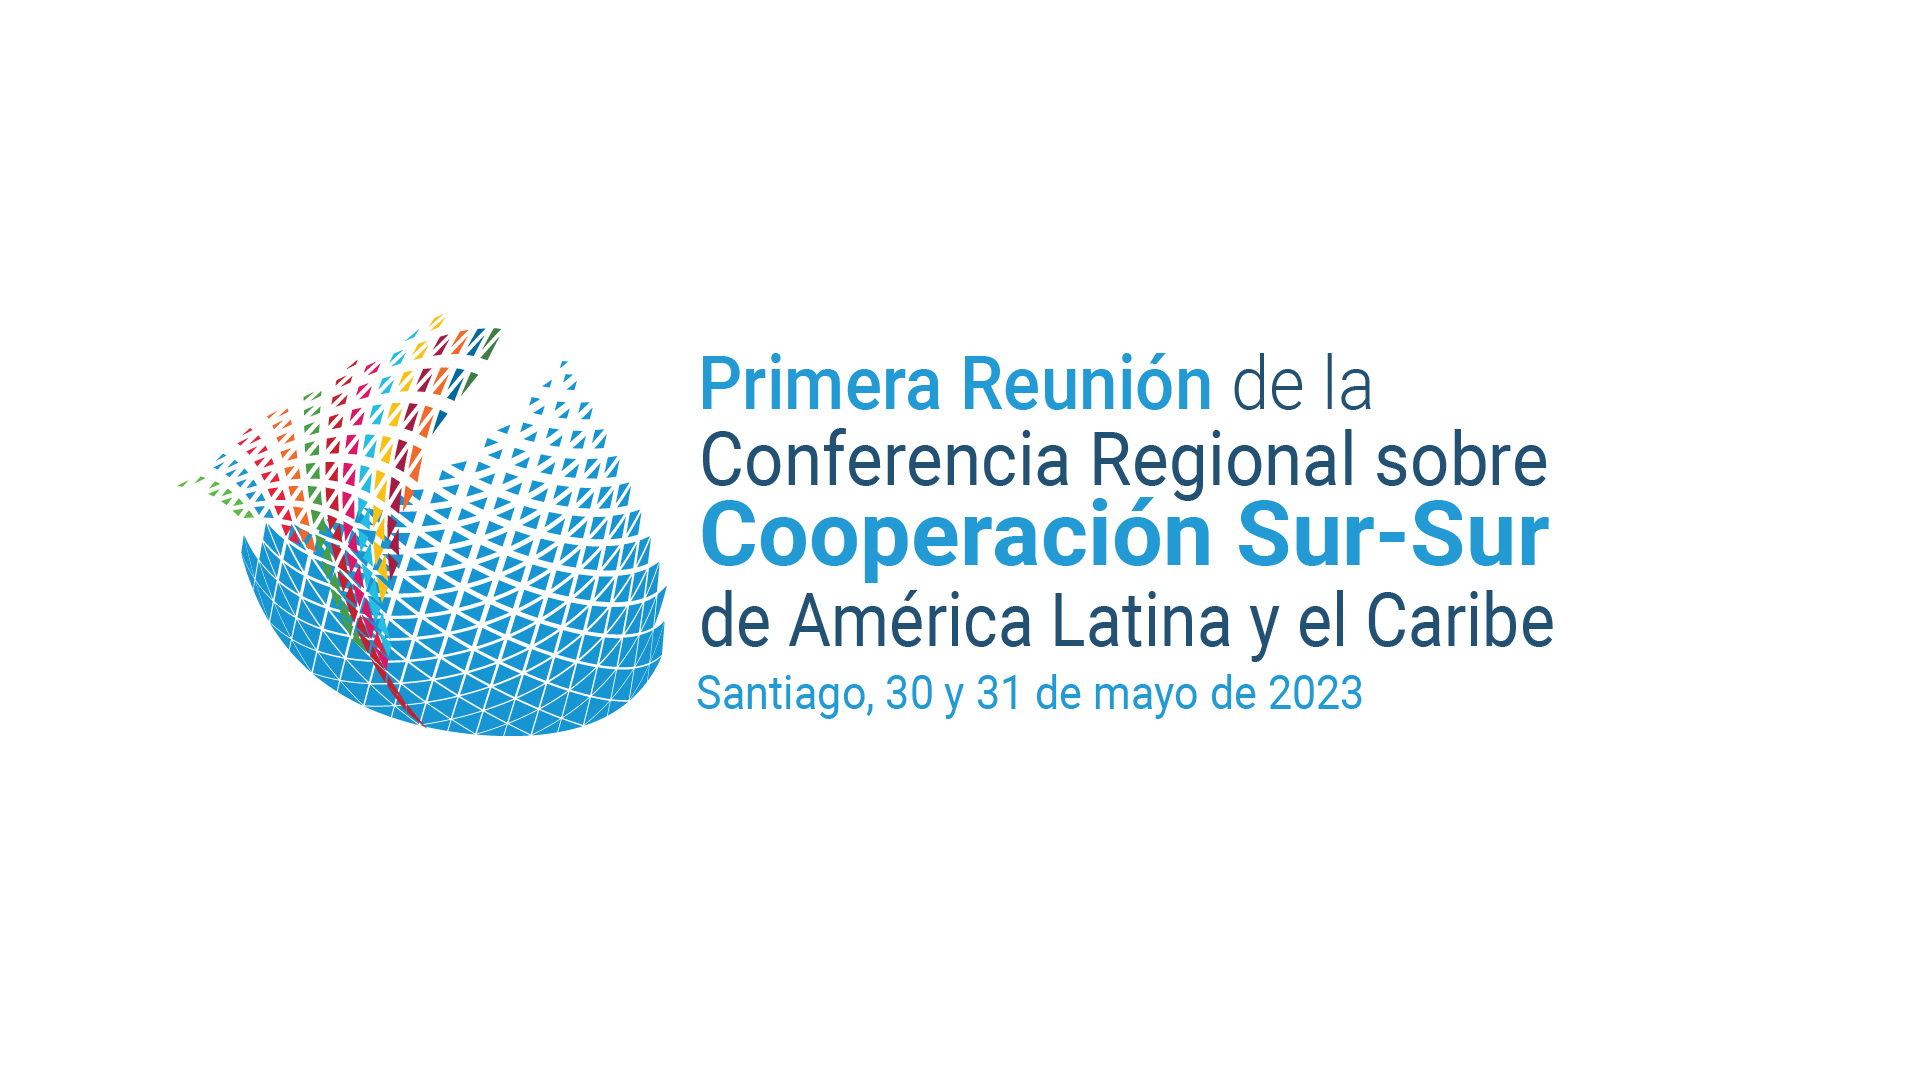 Primera Reunión de la Conferencia Regional sobre Cooperación Sur-Sur de América Latina y el Caribe se realizará en sede de la CEPAL